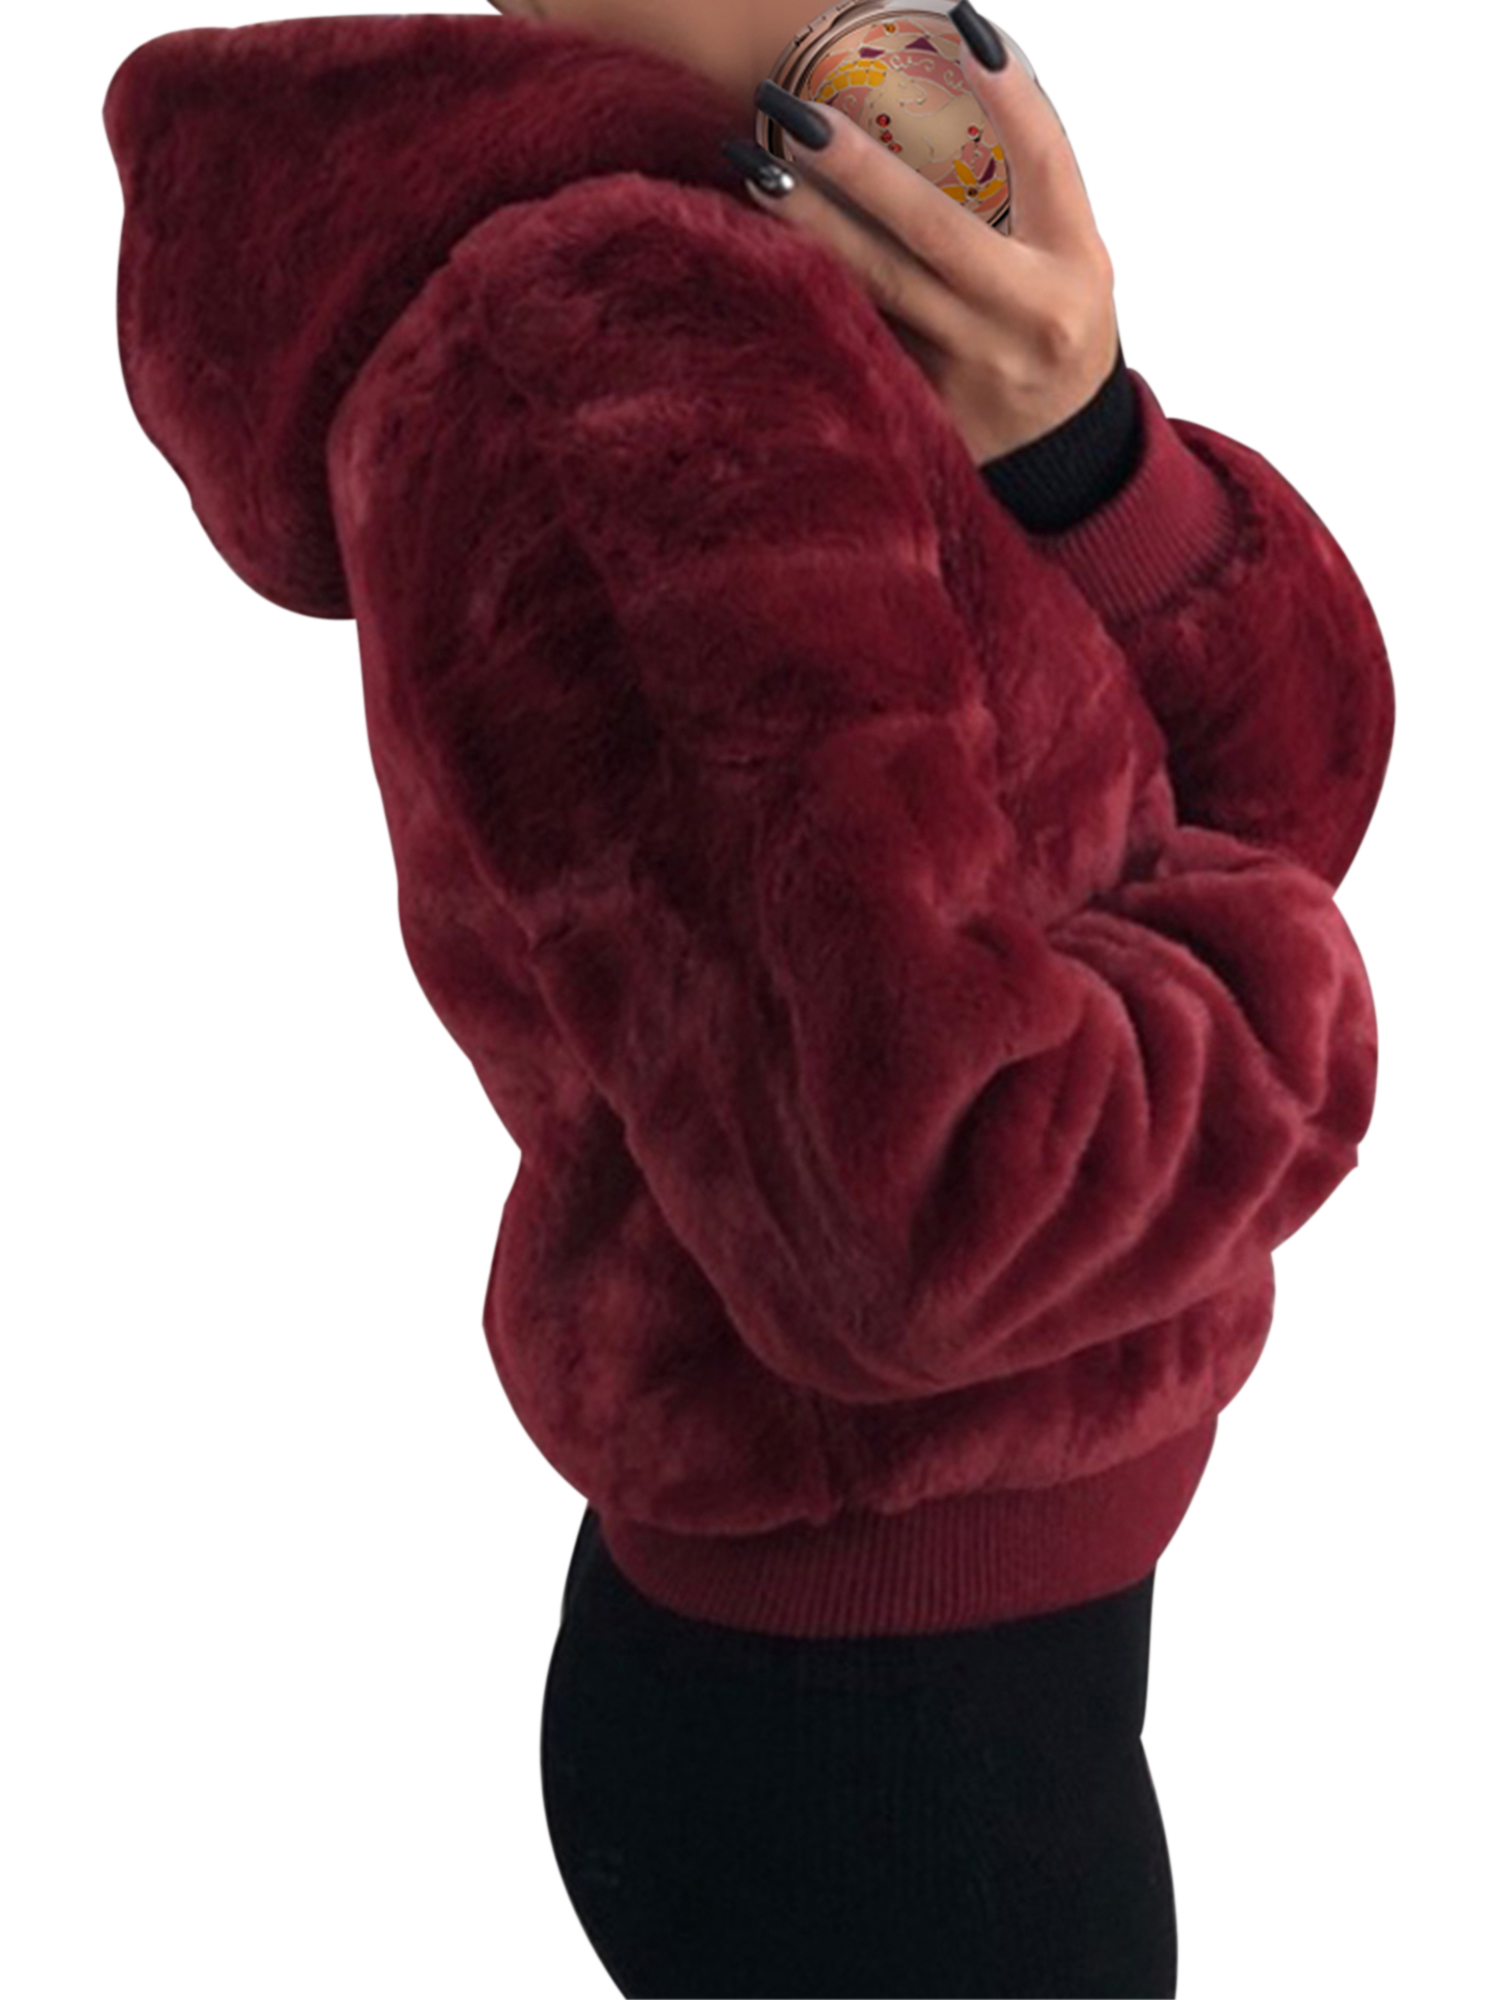 Vintage Women Faux Fleece Coat Jacket Hooded Outwear Ladies Winter Fashon Crop Zipper Coat Sweatshirt Sweater Long Sleeve Coat Fleece Warm Jacket Outwear - image 3 of 5